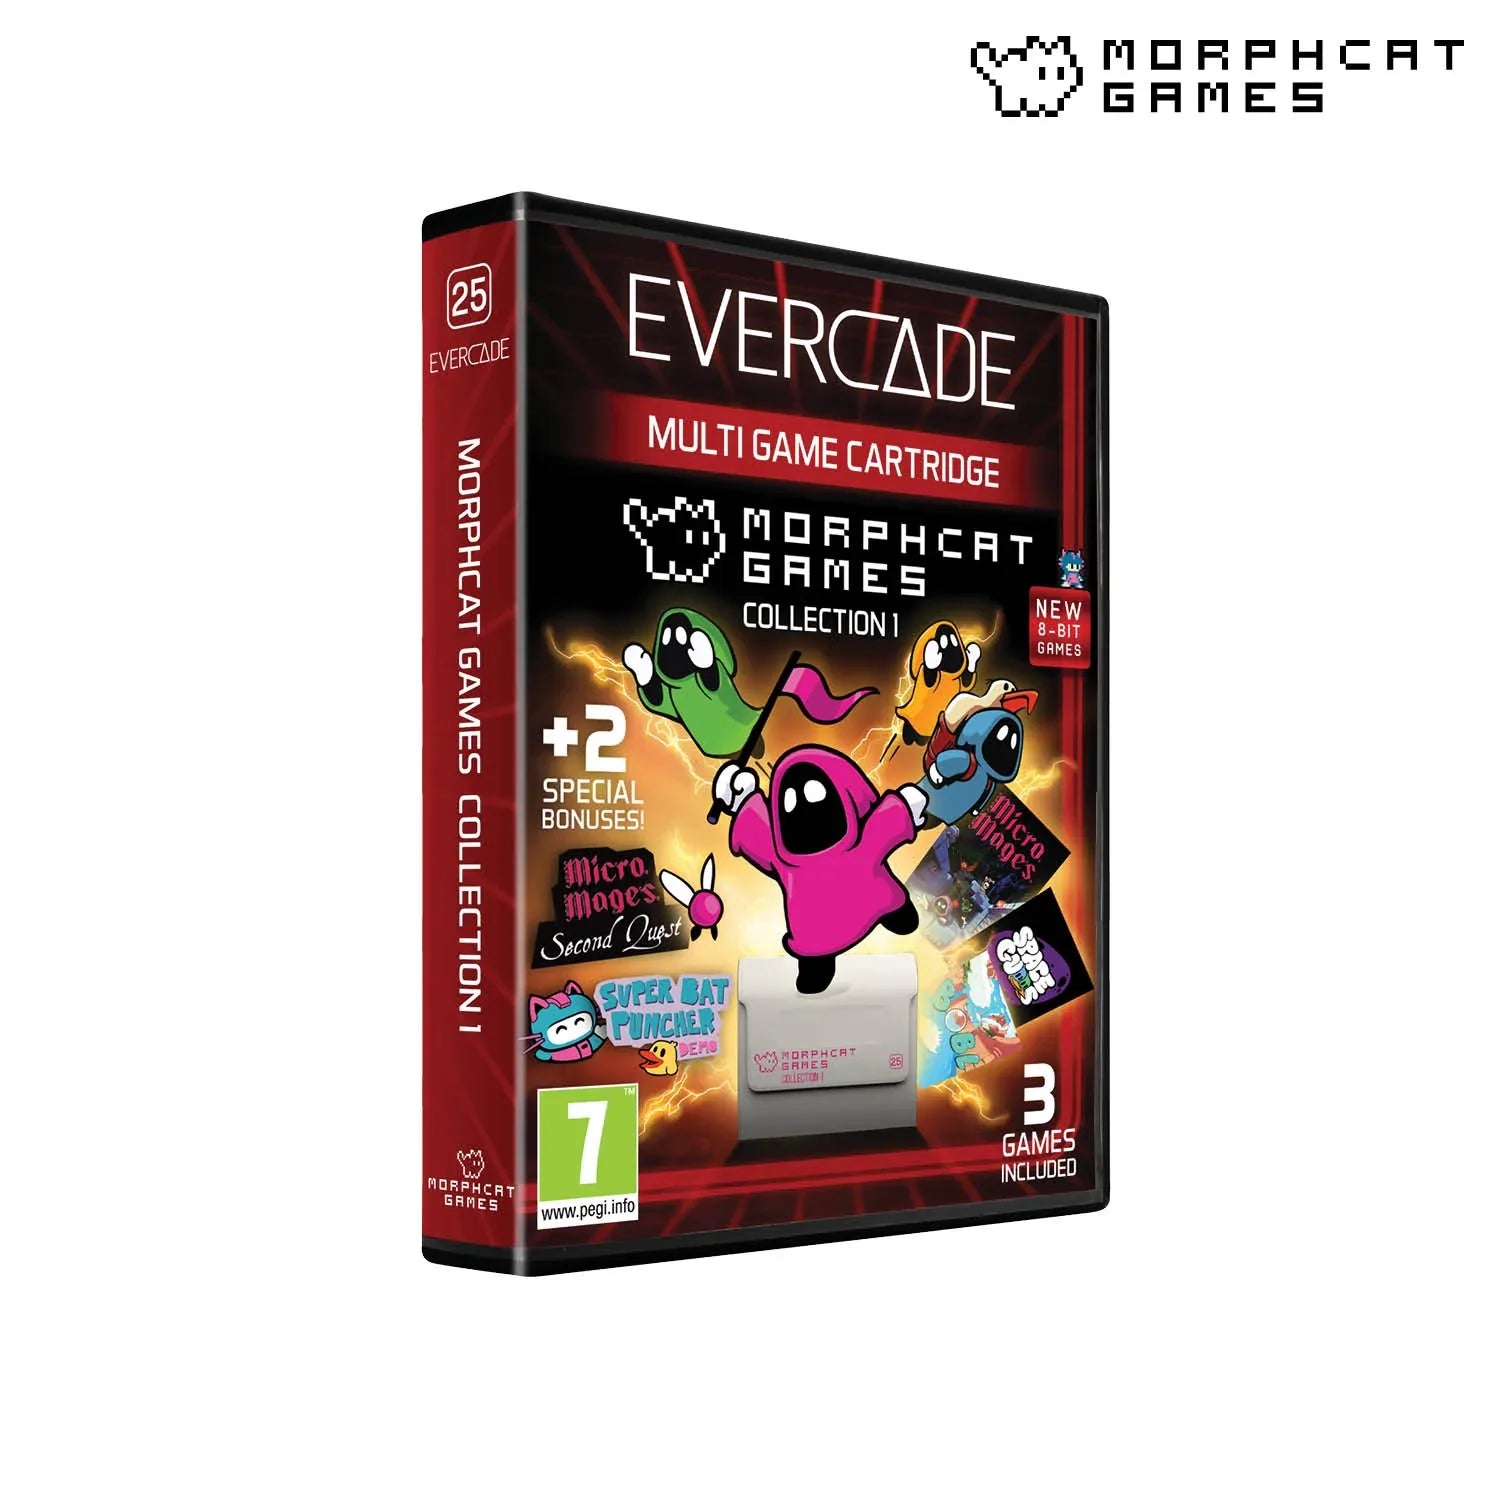 Evercade Morphcat Collection 1 - CastleMania Games